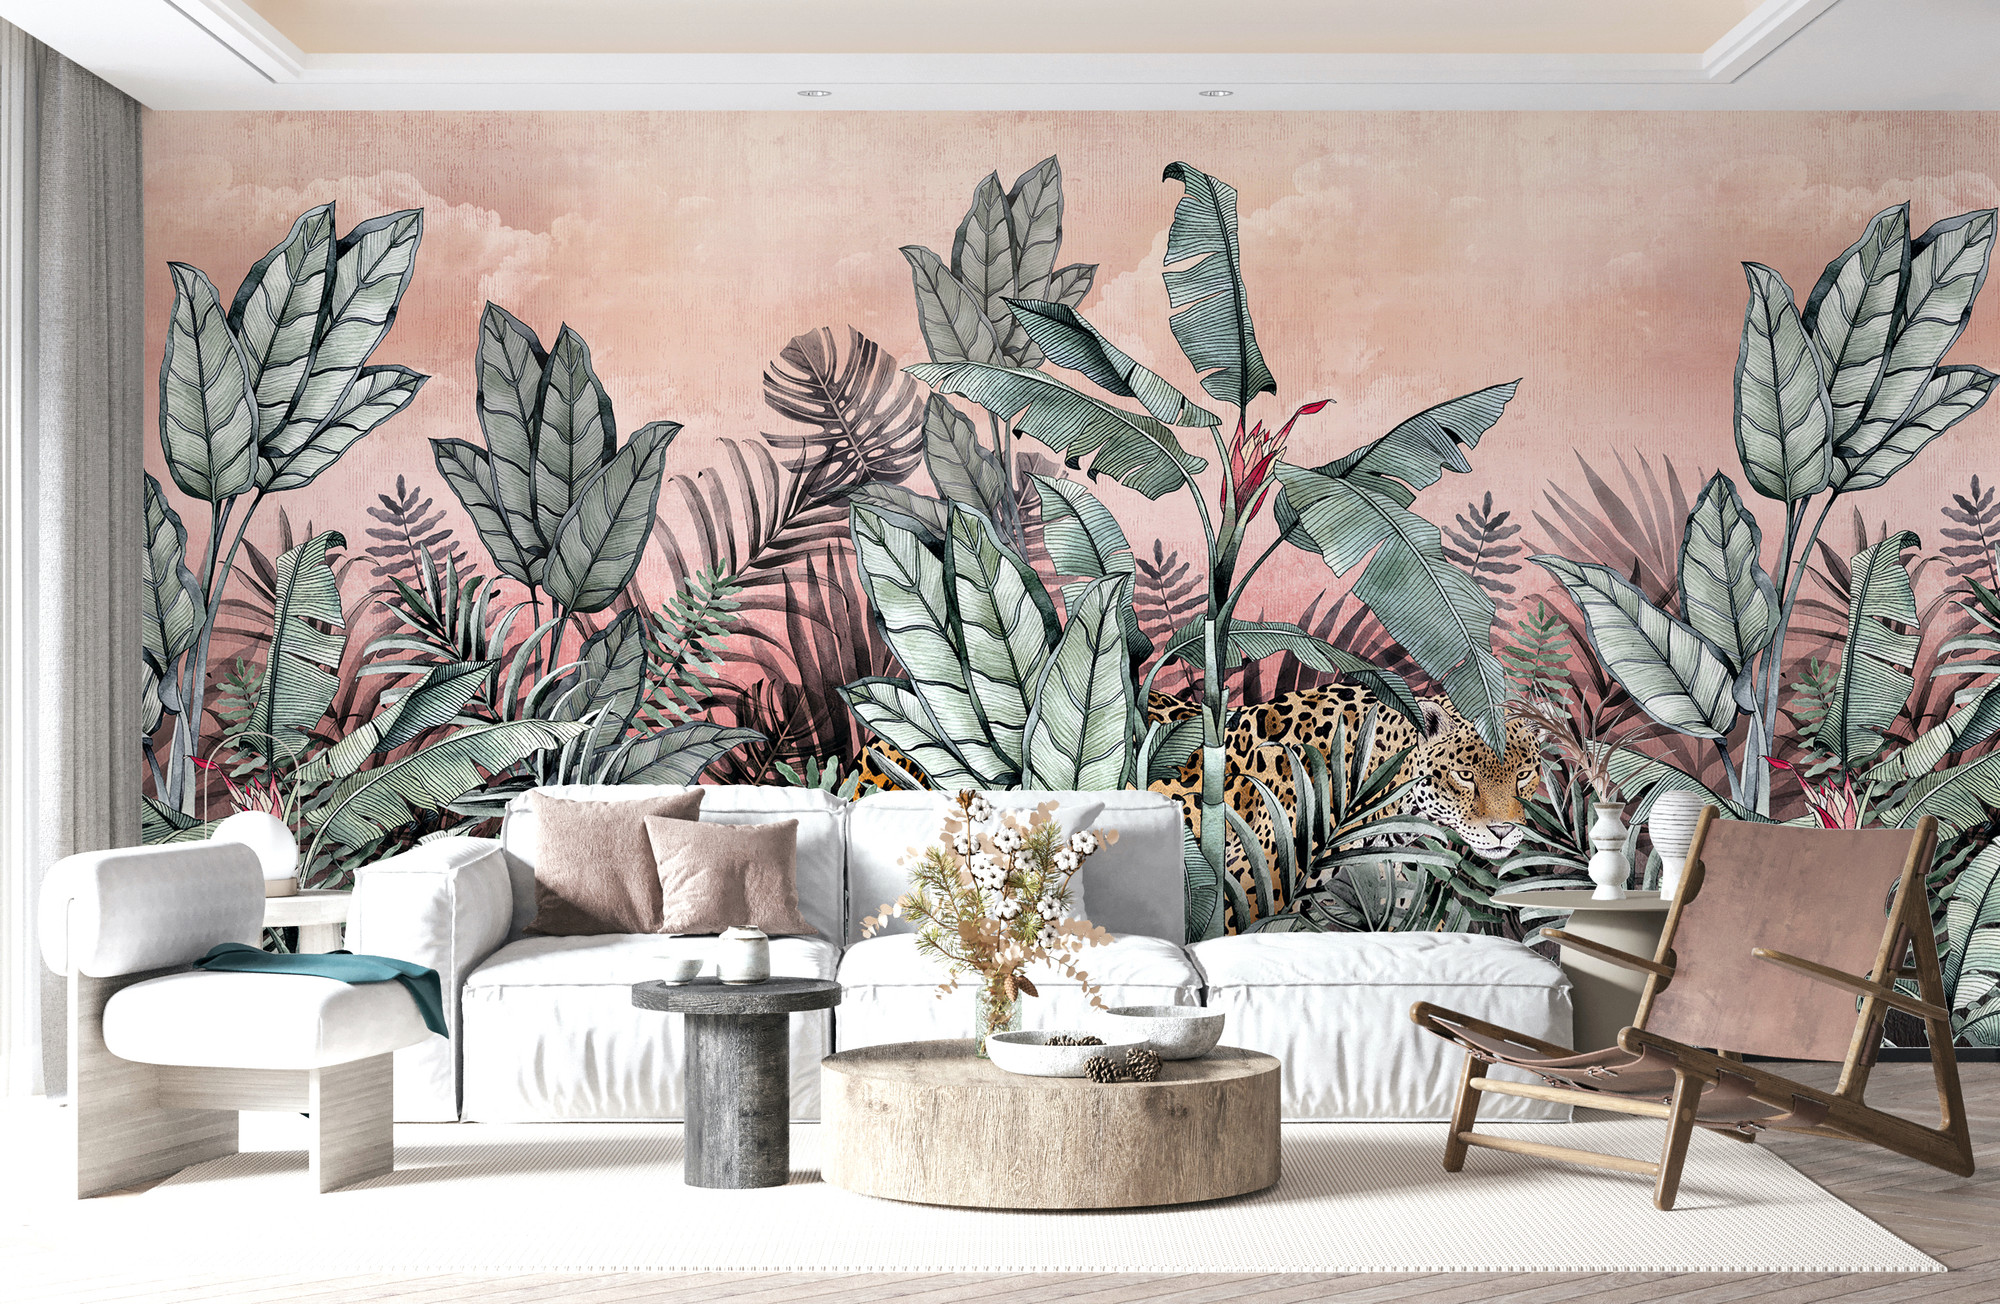 Coral pink jaguar cat jungle theme wallpaper mural avalana design mercial wallpaper